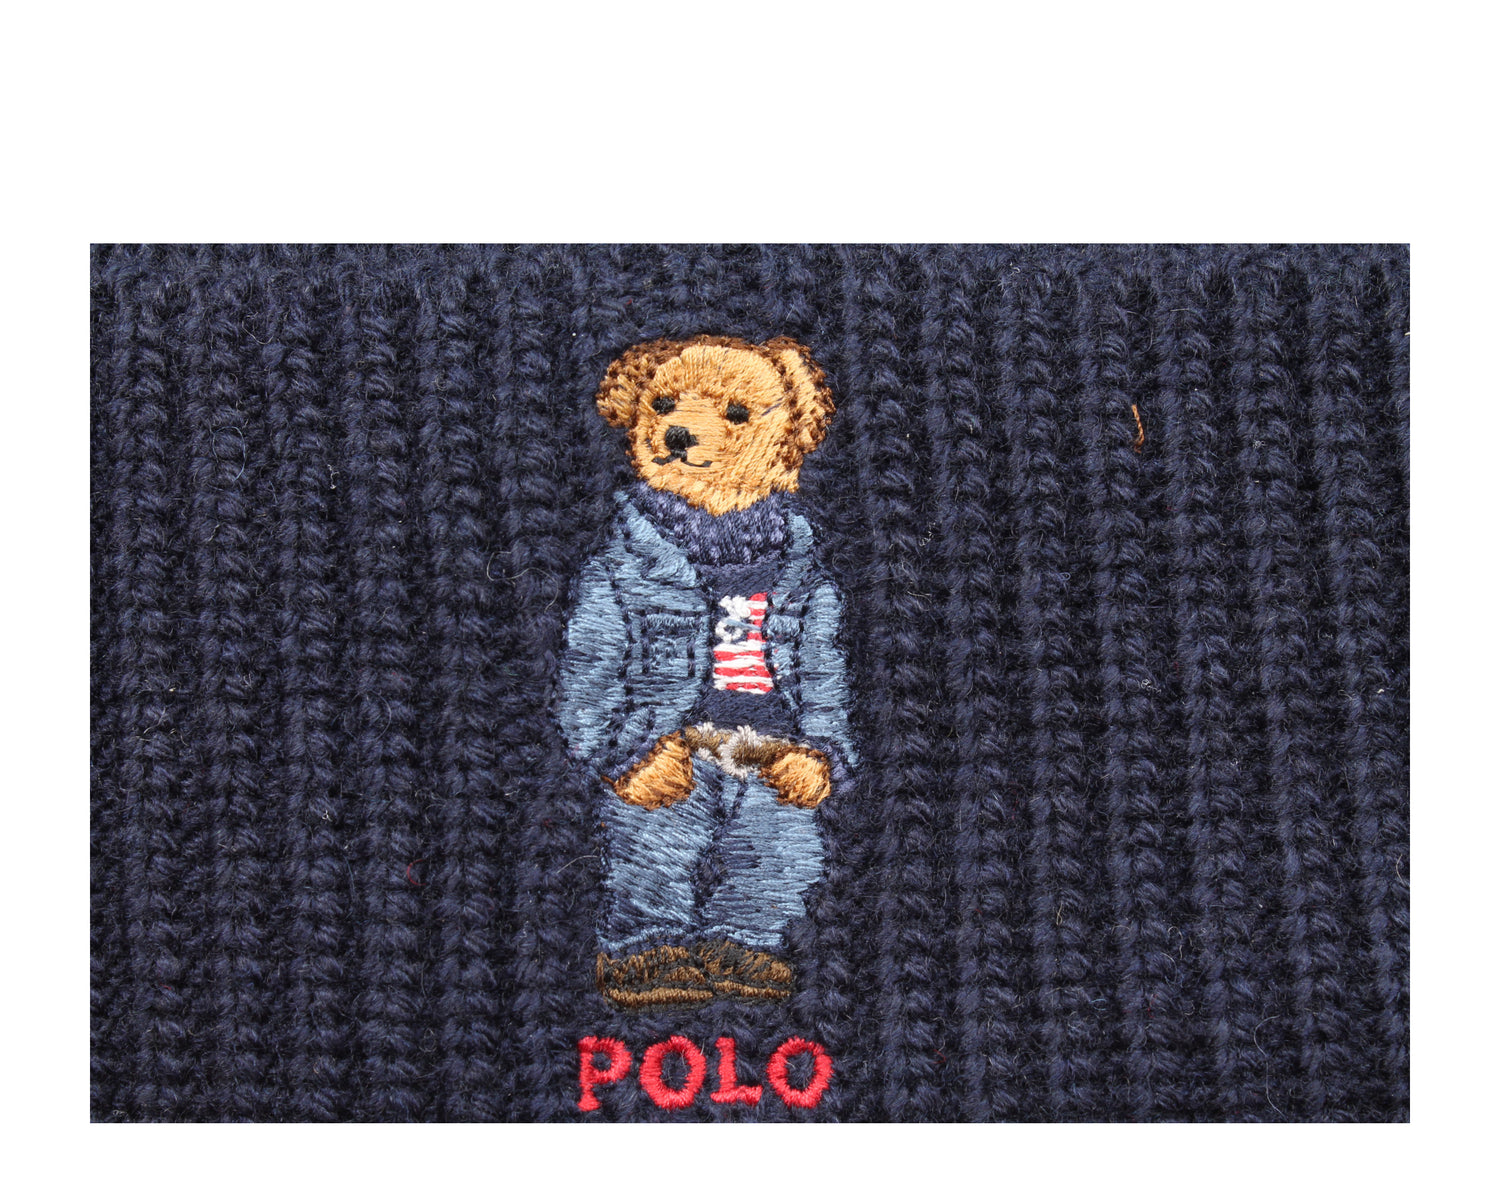 Polo Ralph Lauren Polo Bear Jean Jacket Sweater Knit Cuffed Hat